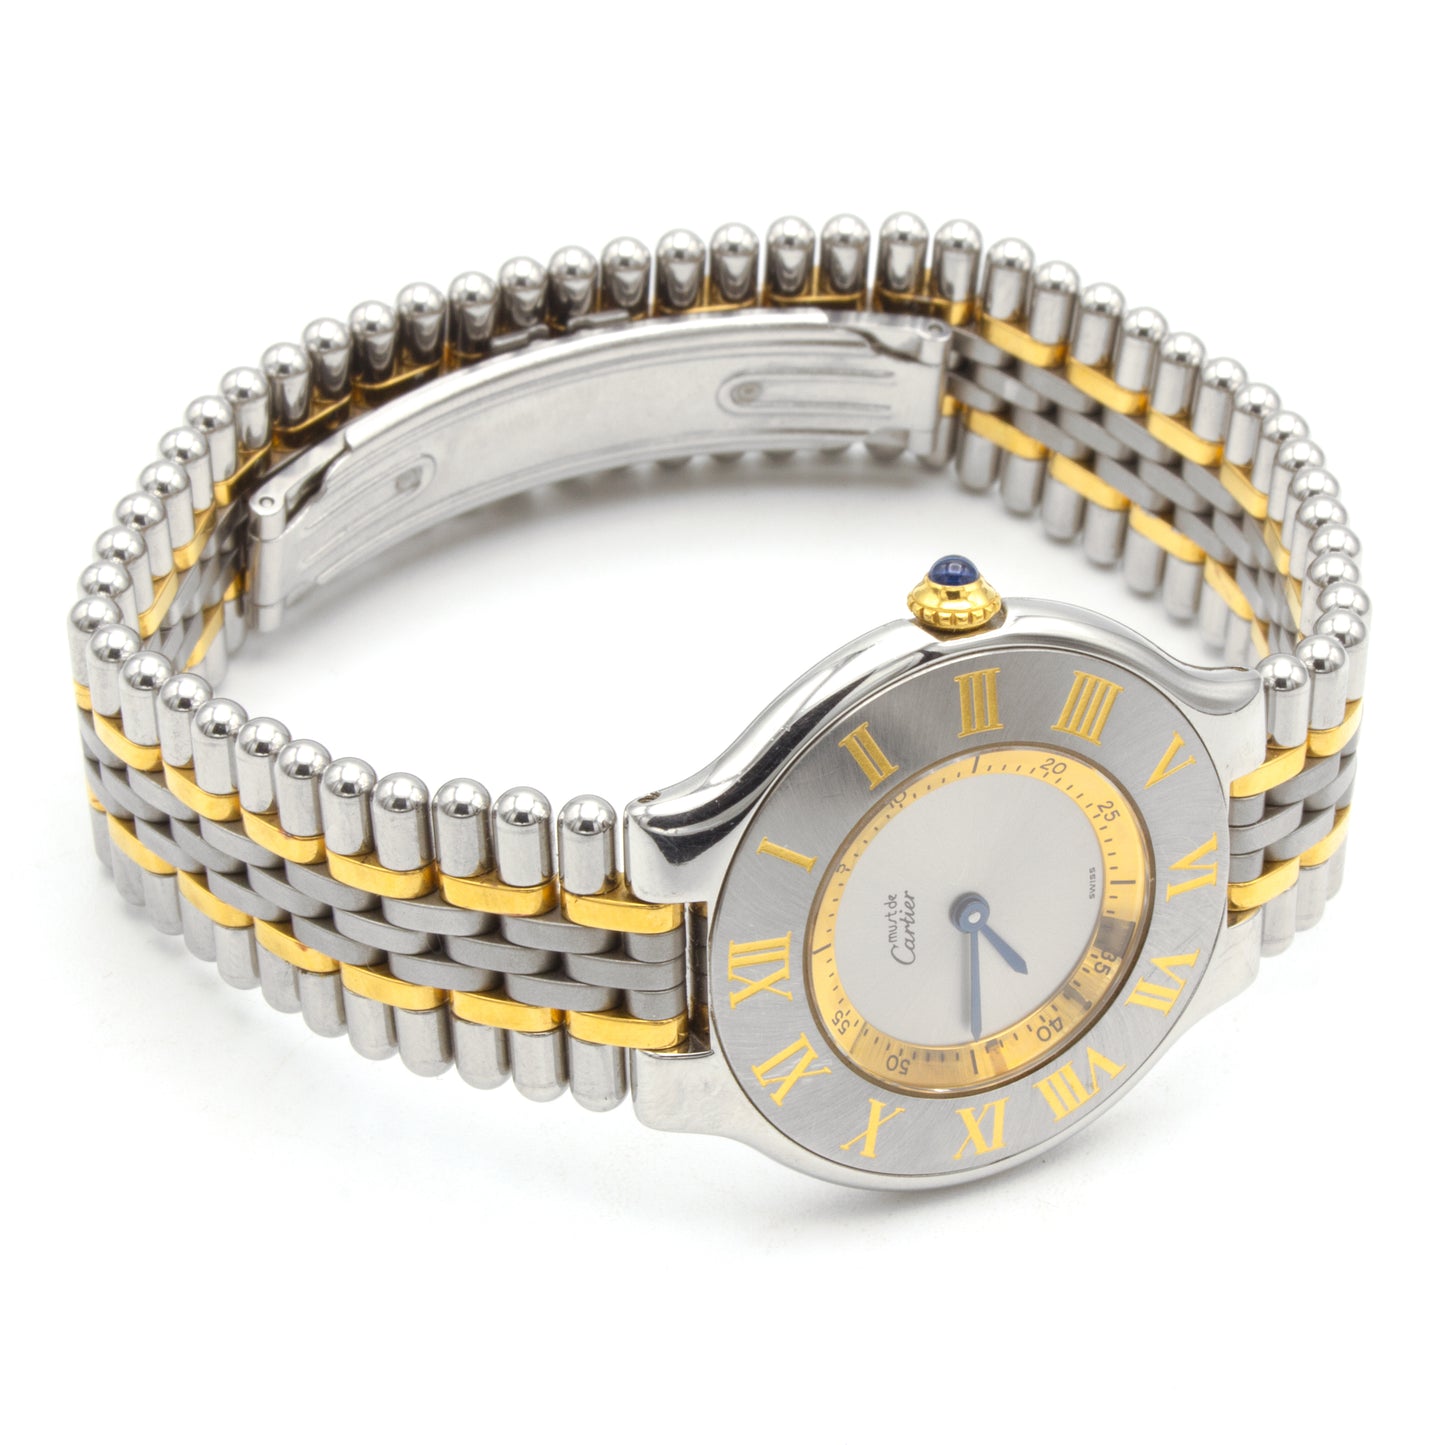 Cartier Must 21 watch